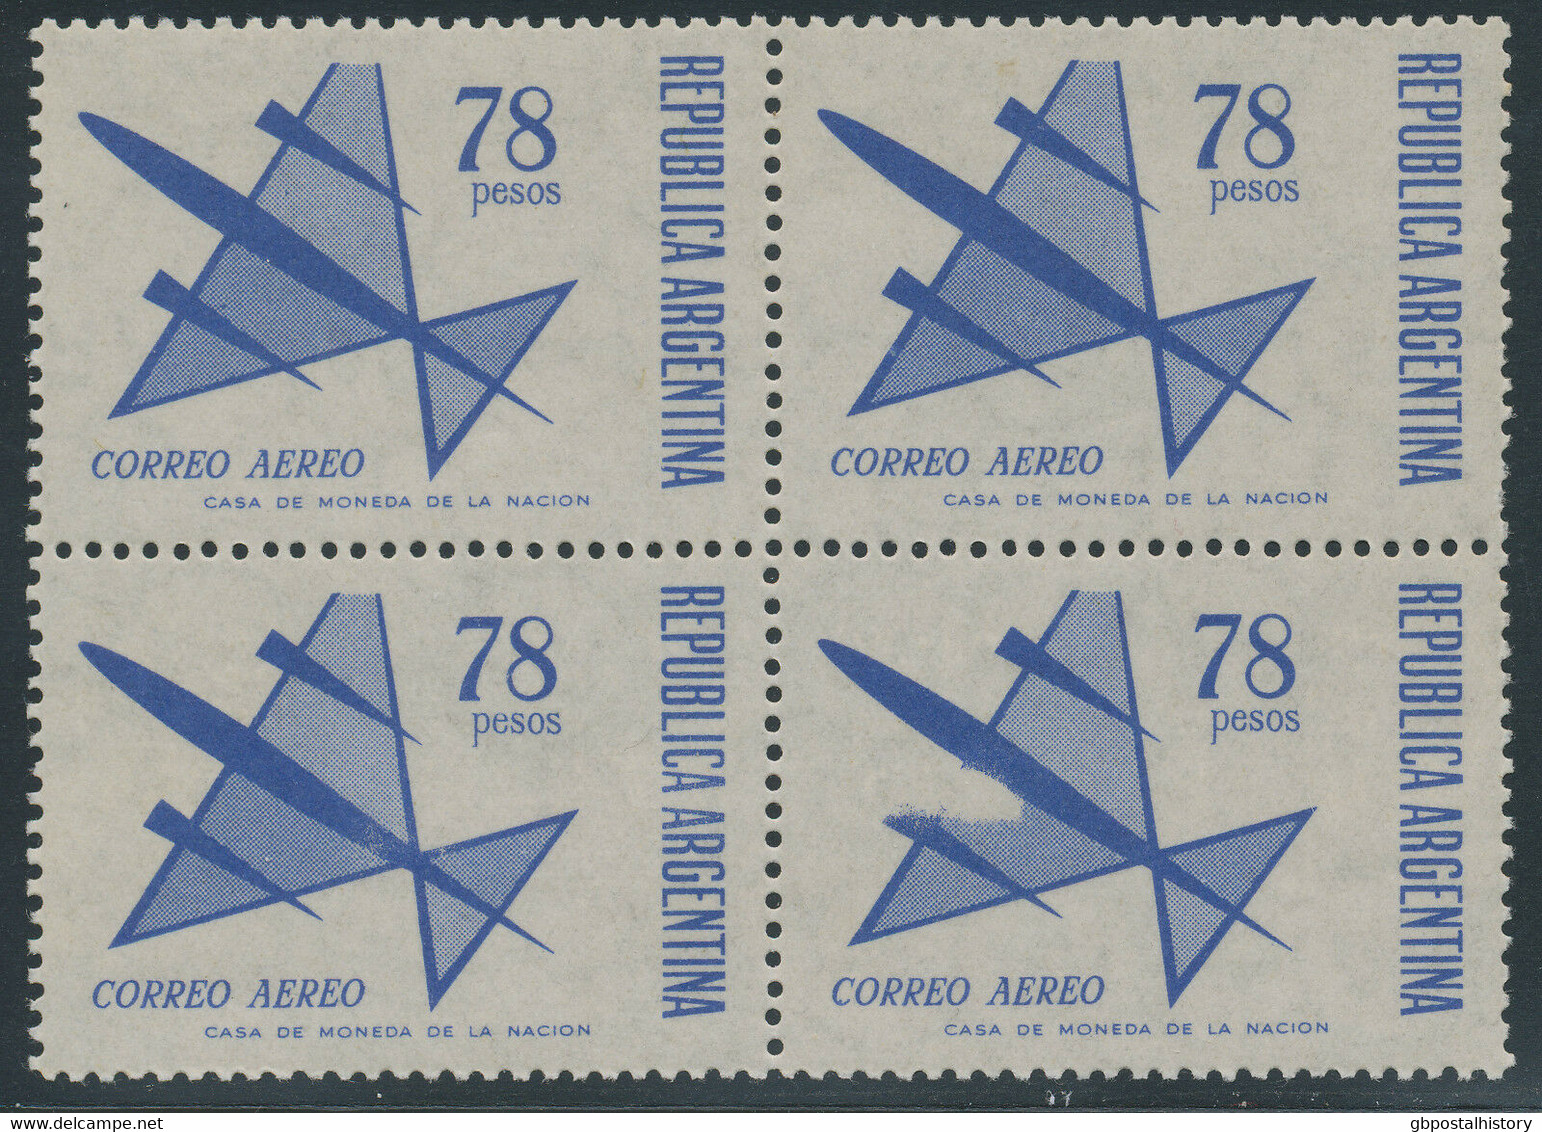 ARGENTINIEN 1967 78 P 1974 2.65 P Flp.-Ausgabe Postfrische Viererblöcke ABARTEN - Luftpost